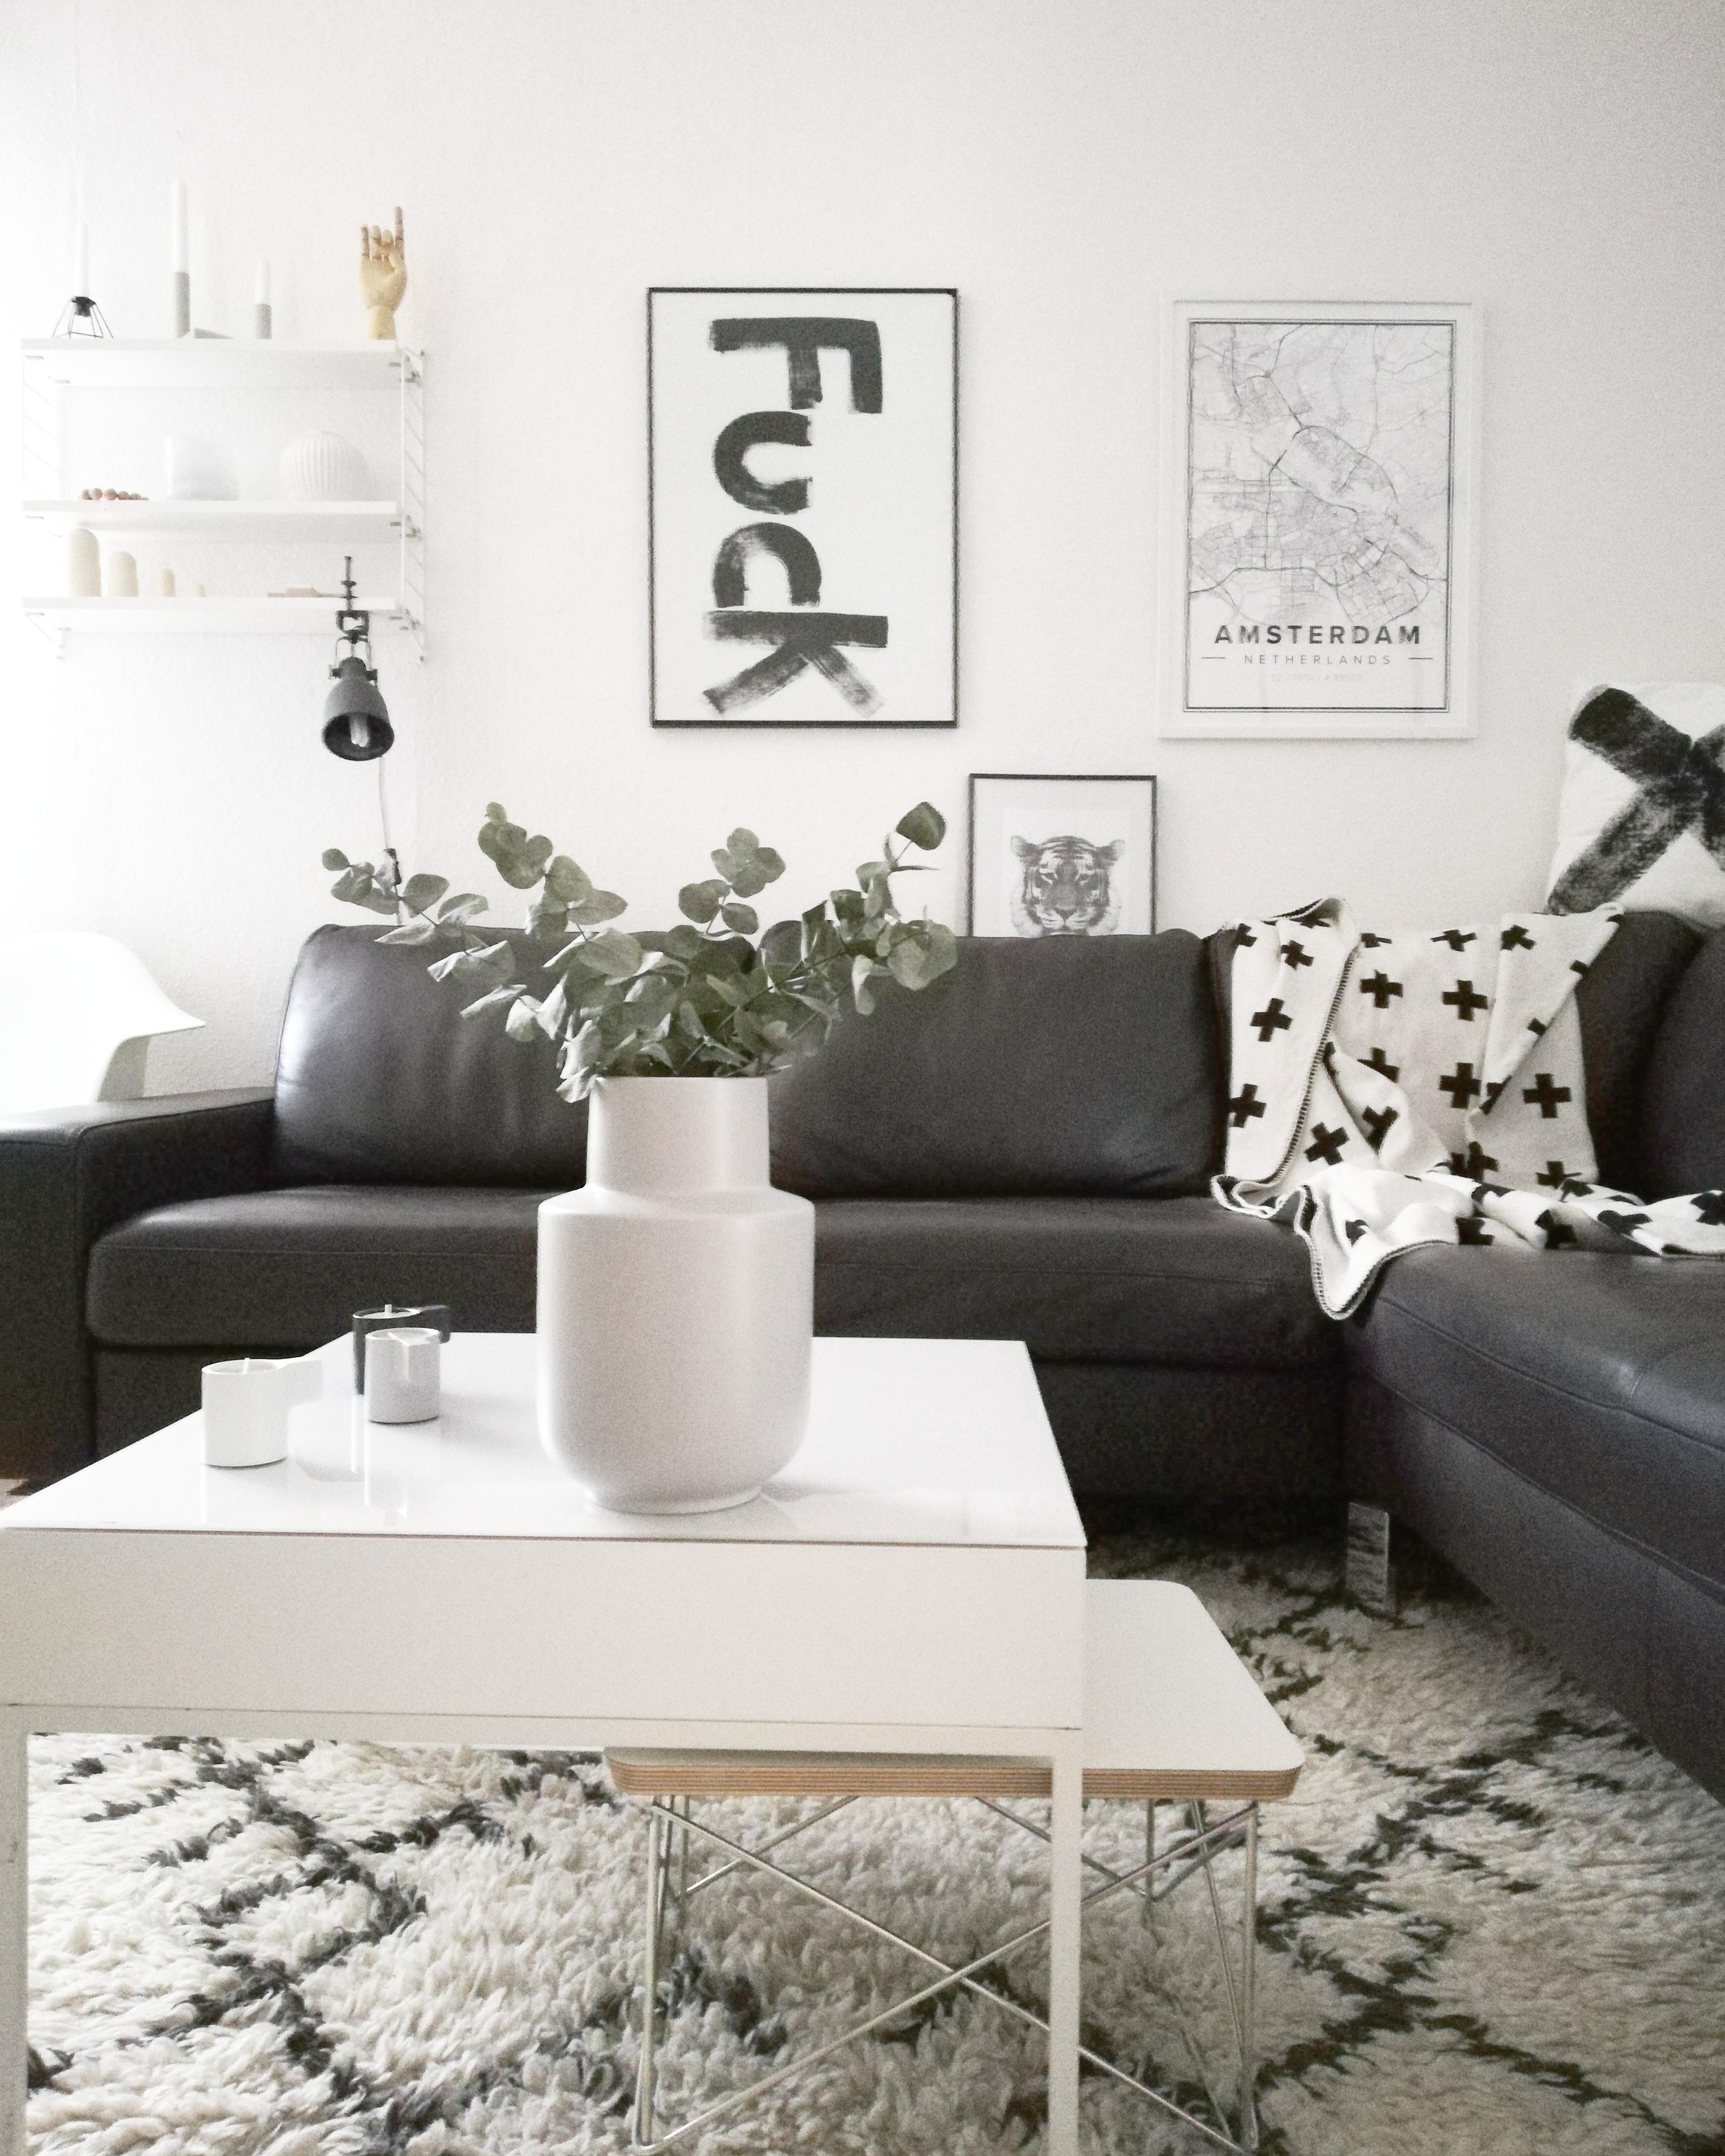 Wohnzimmer...
#wohnzimmertisch #print #string Regal #vase #eukalyptus #vitra #eames #plaid #piawallen #livingroom #couch